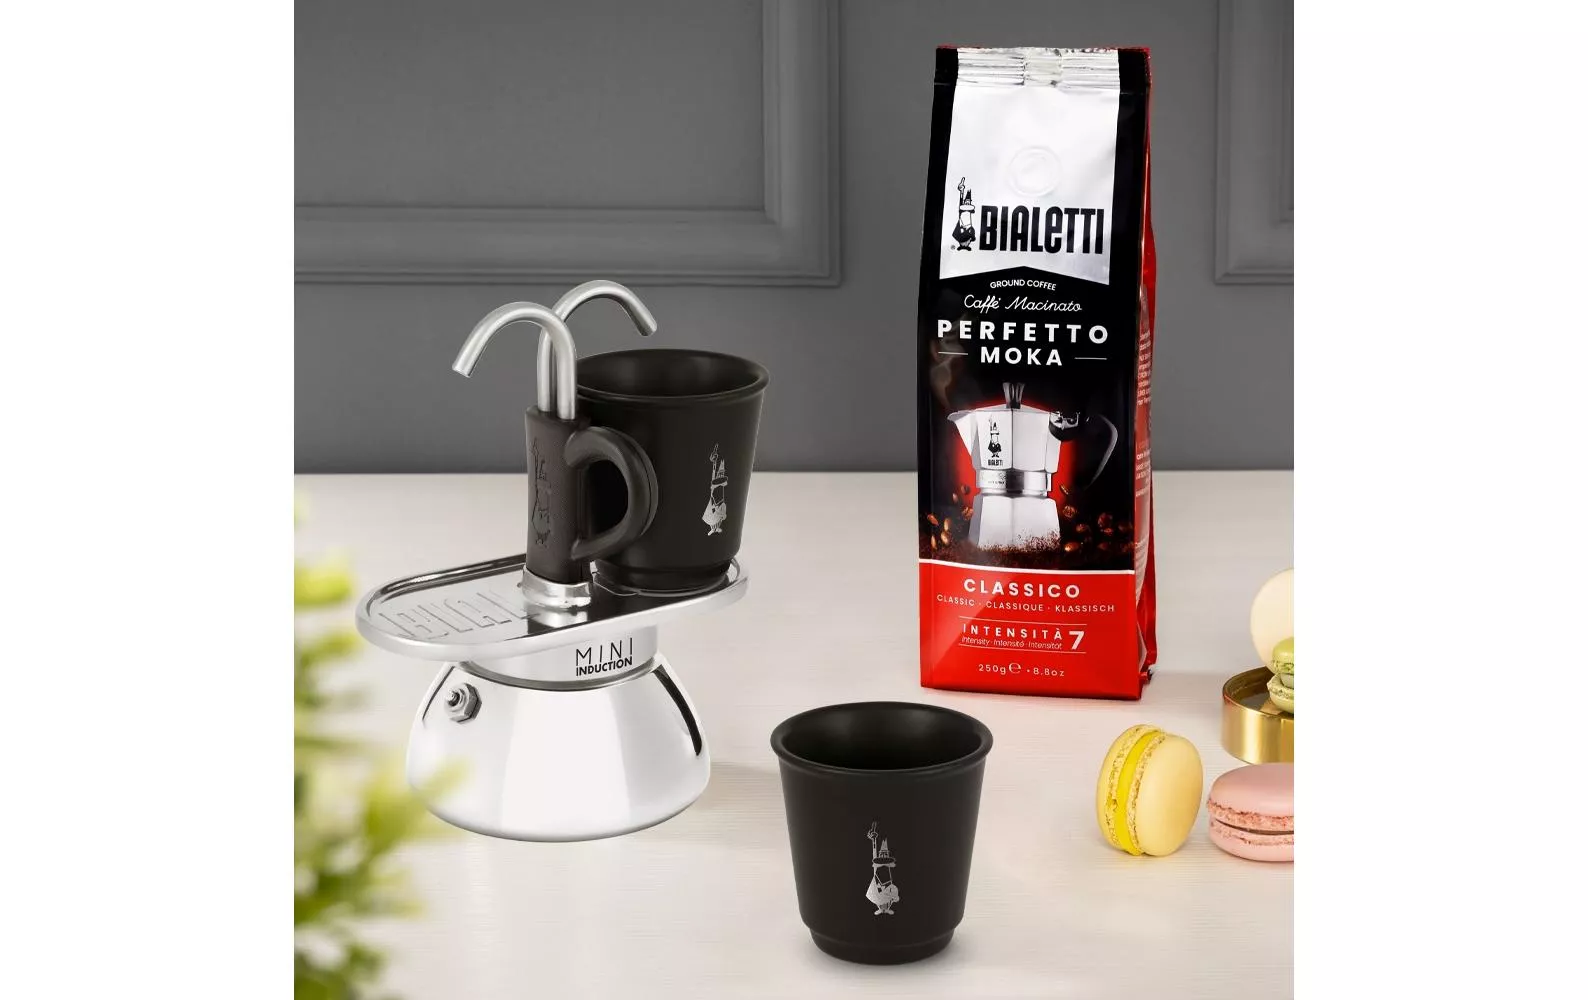 Espresso Maker Mini Express Induction 2 tazze, nero - Caffettiera espresso